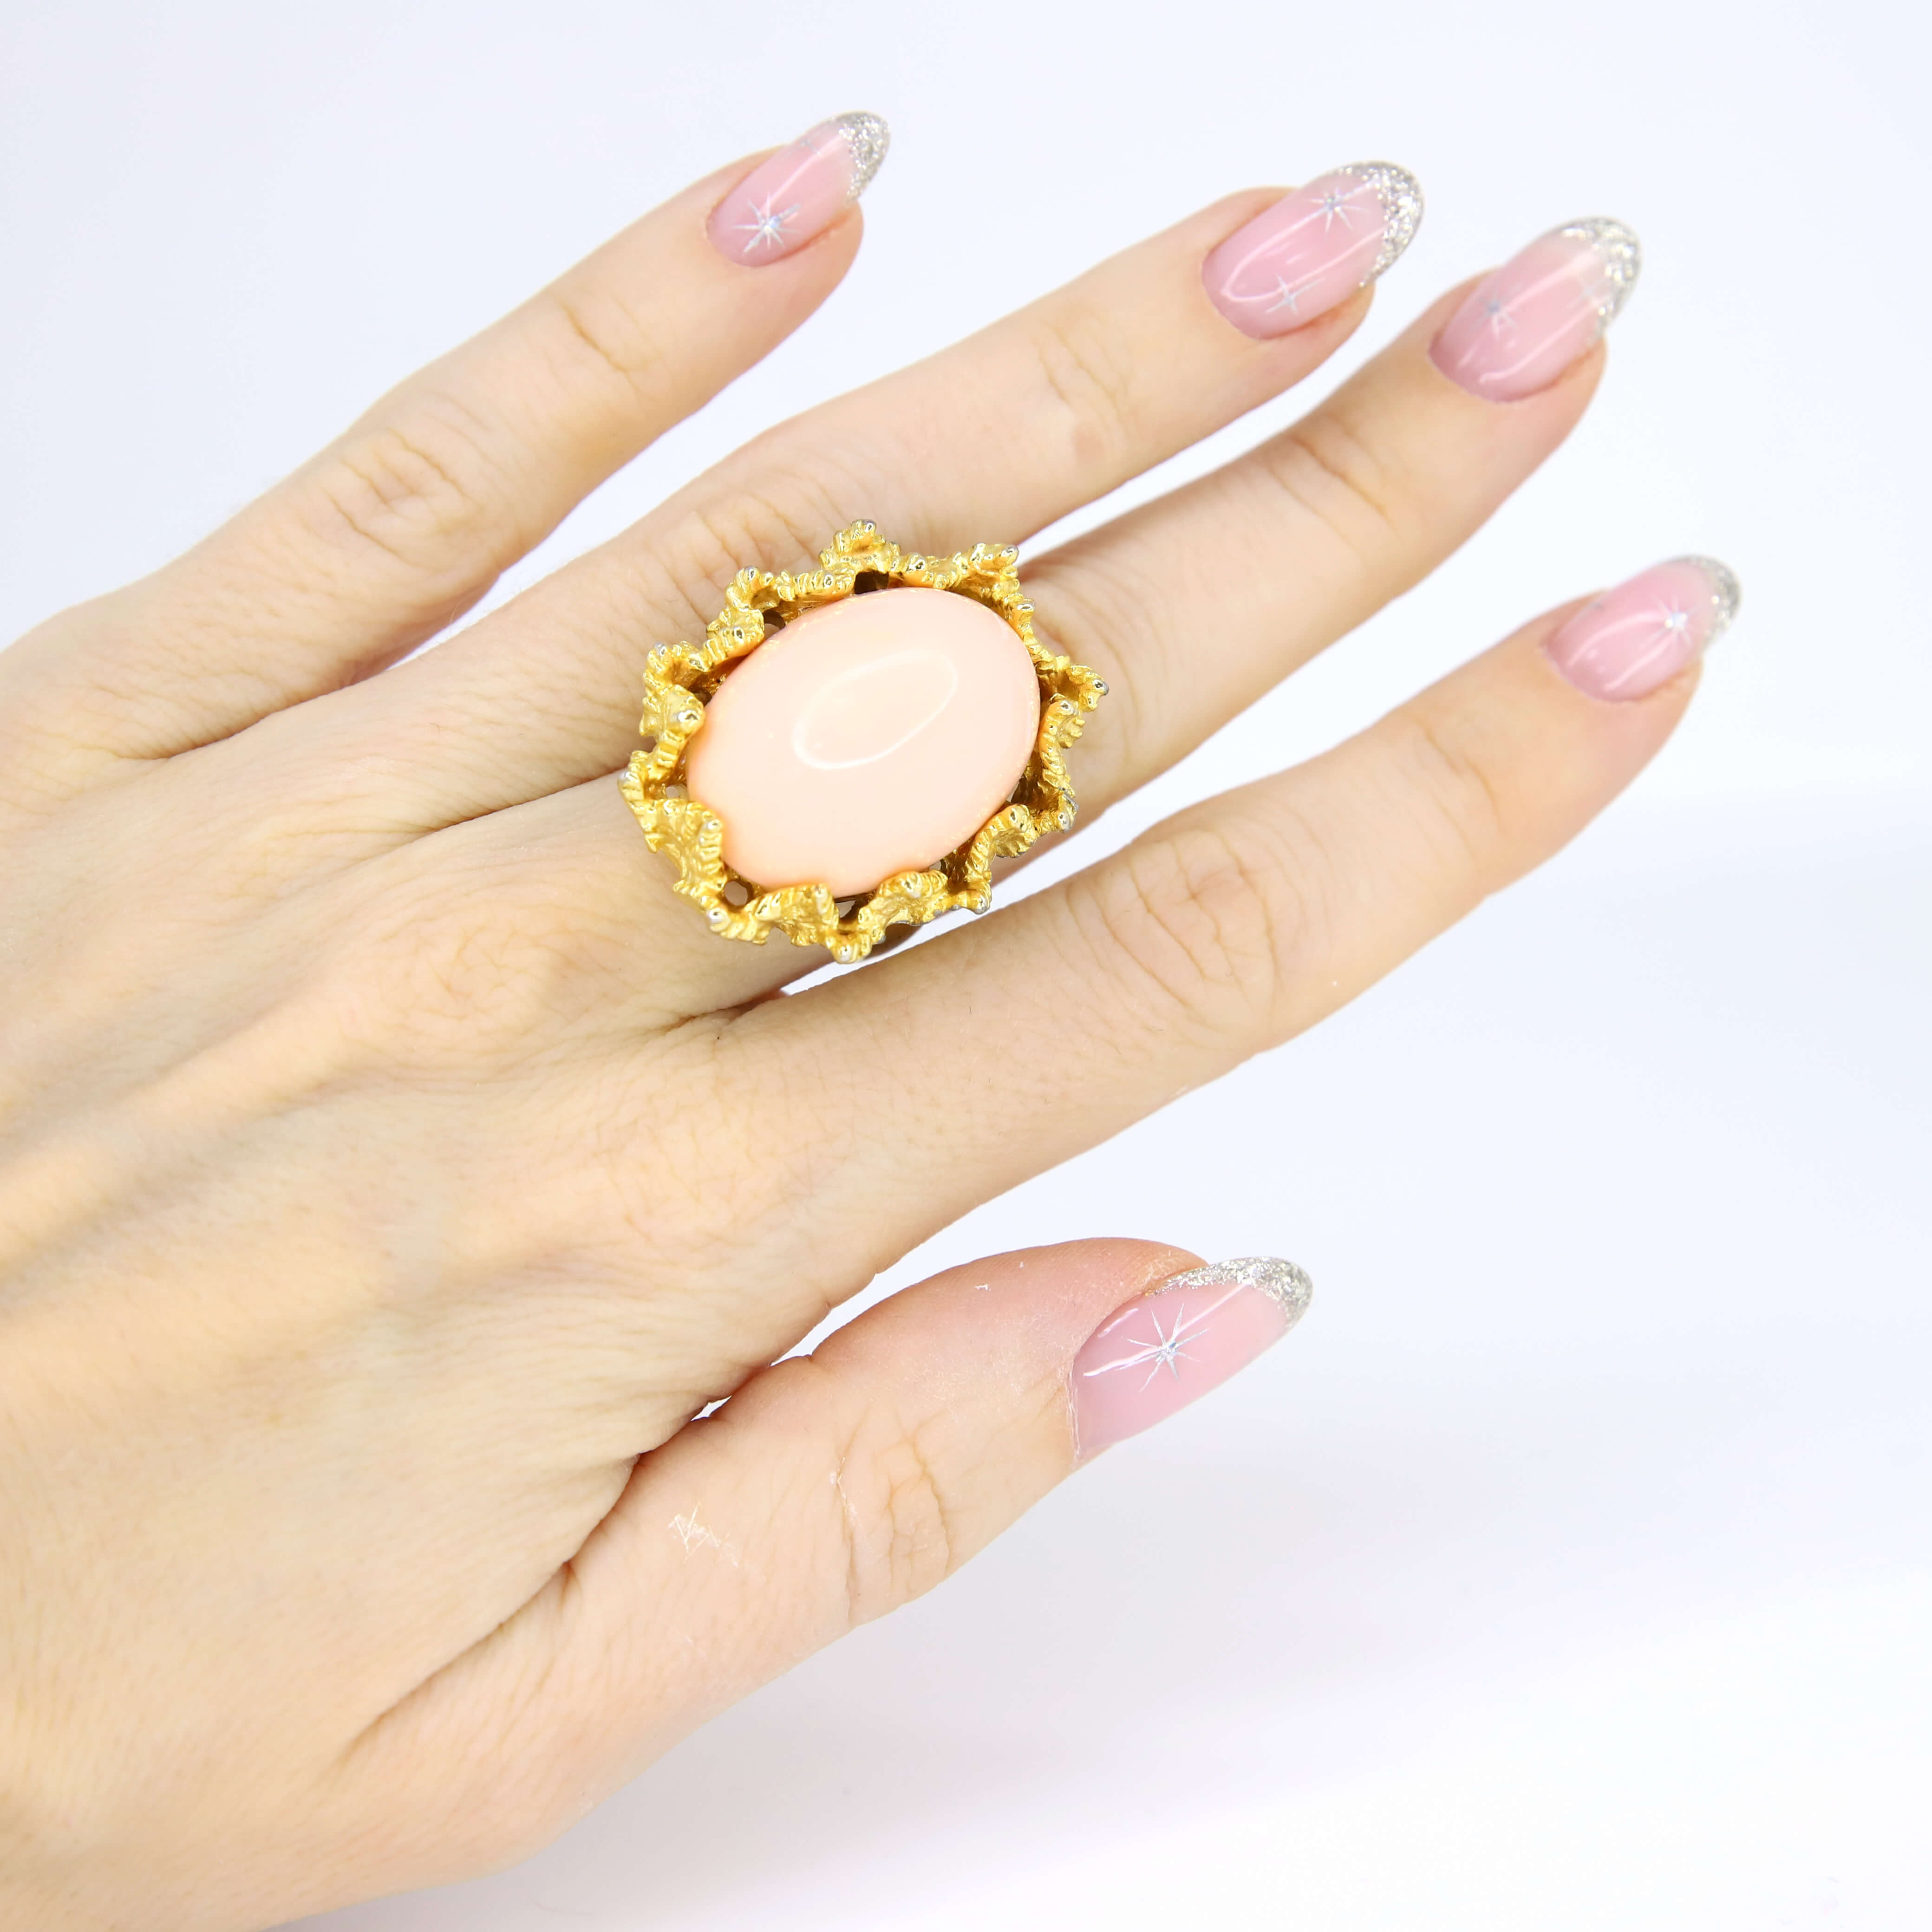 Винтажное кольцо с кабошоном размер 15,5-16,5, цвет Розовый, фото 1